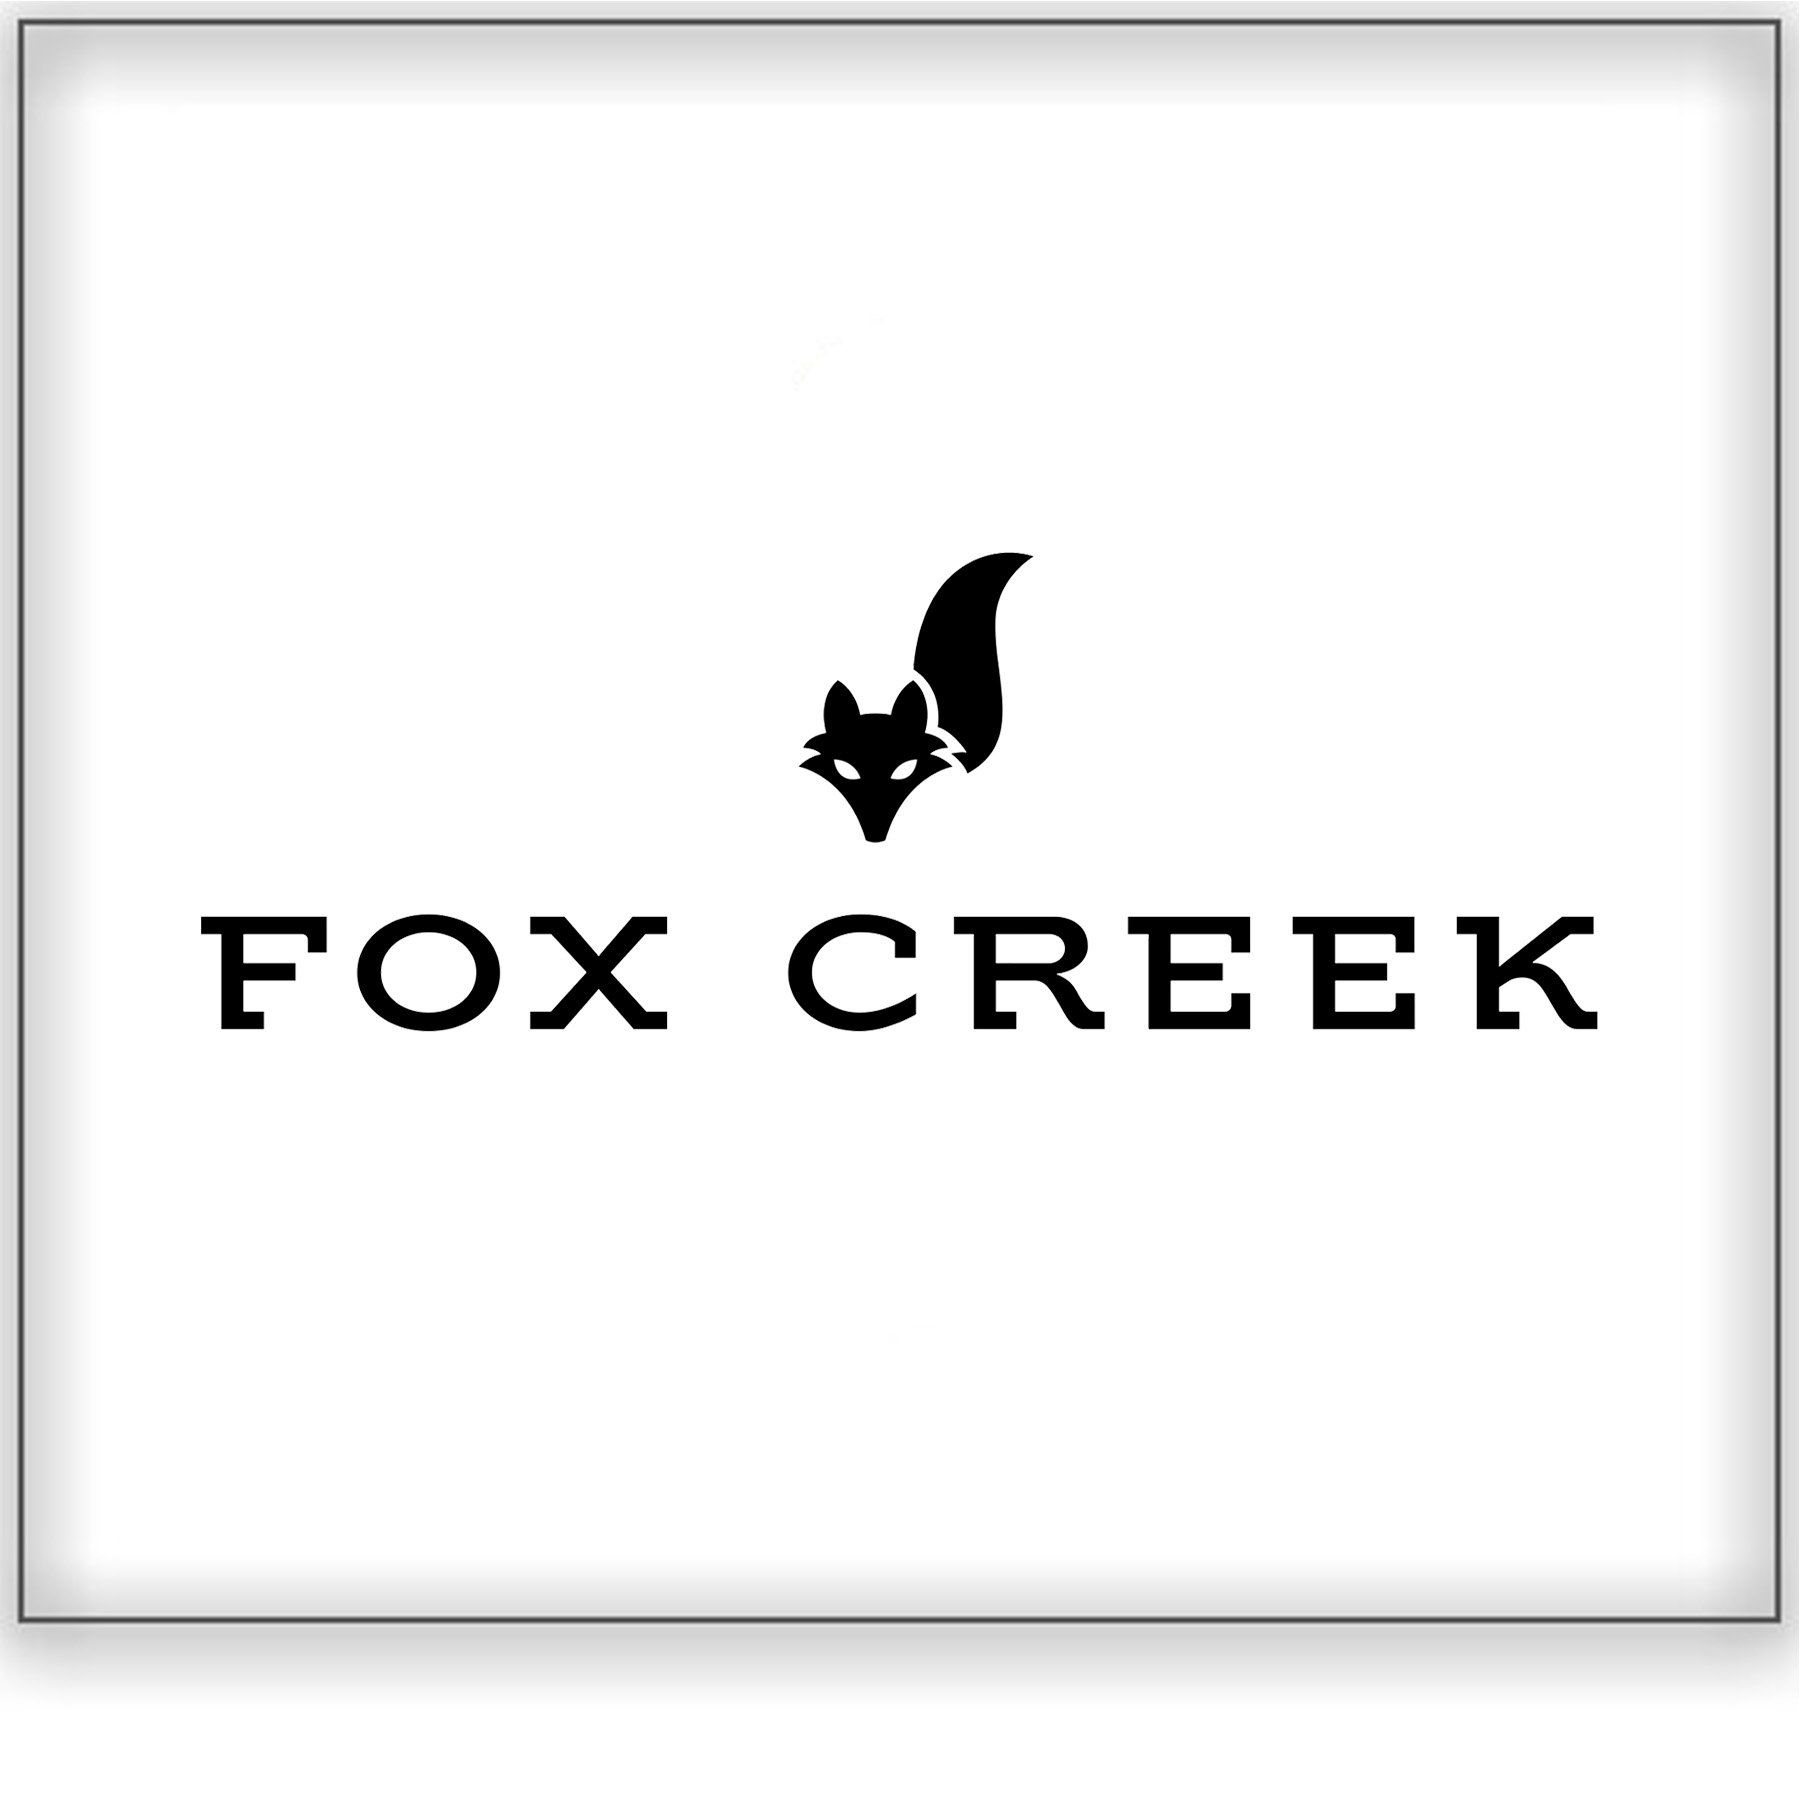 Fox Creek&lt;a href=/fox-creek&gt;McLaren Vale, Australia ➤&lt;/a&gt;